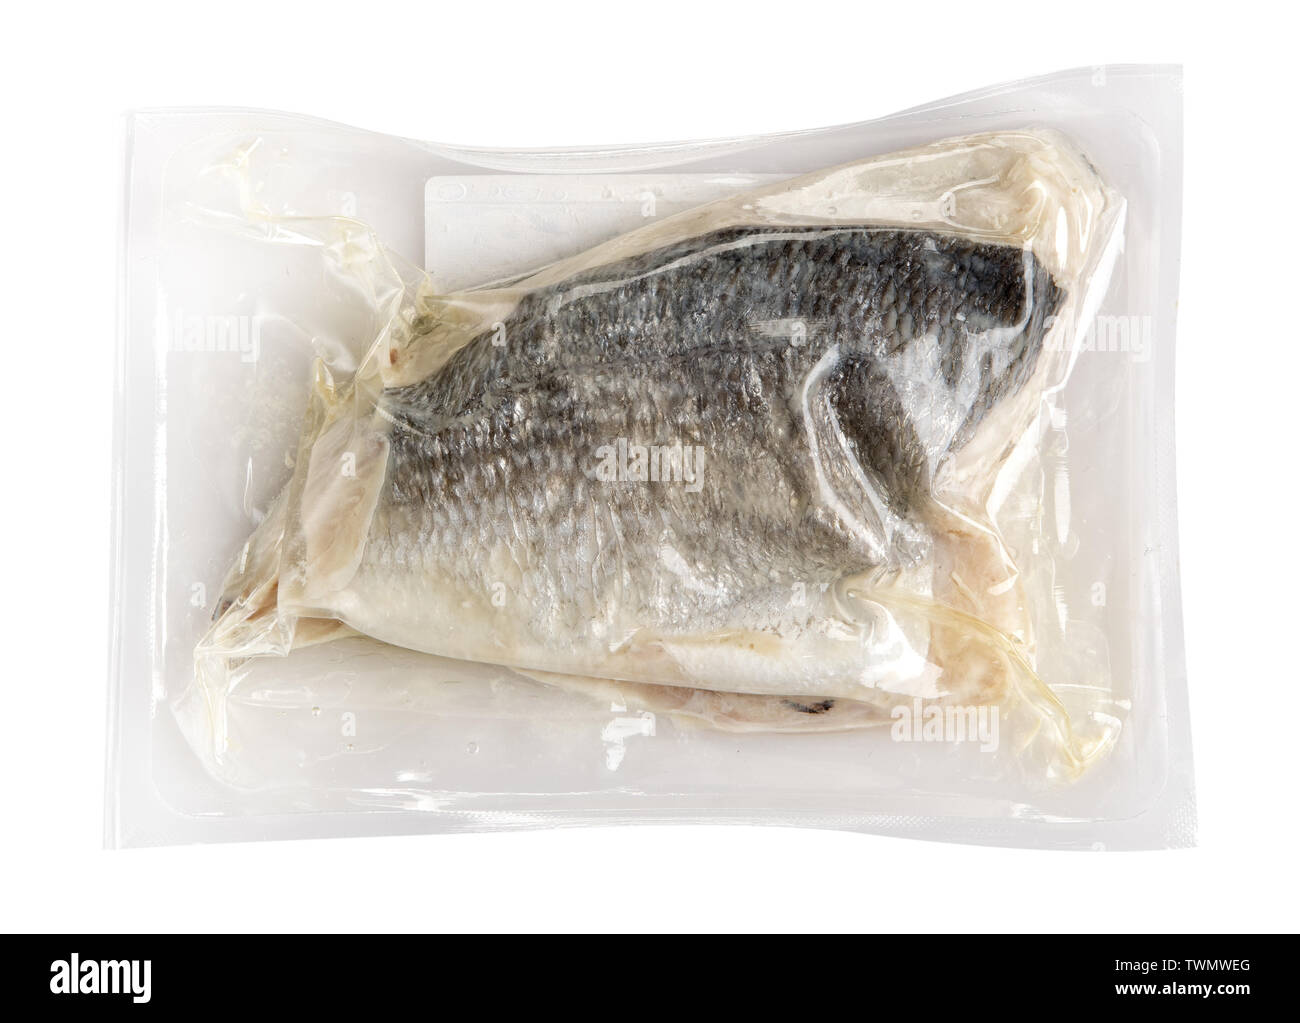 Vakuum verpackt frischen Fisch Filet mit Haut in einem luftdicht verschlossenen Plastikbeutel für die Lagerung, das Einfrieren oder die Haltbarkeit zu verlängern. Stockfoto